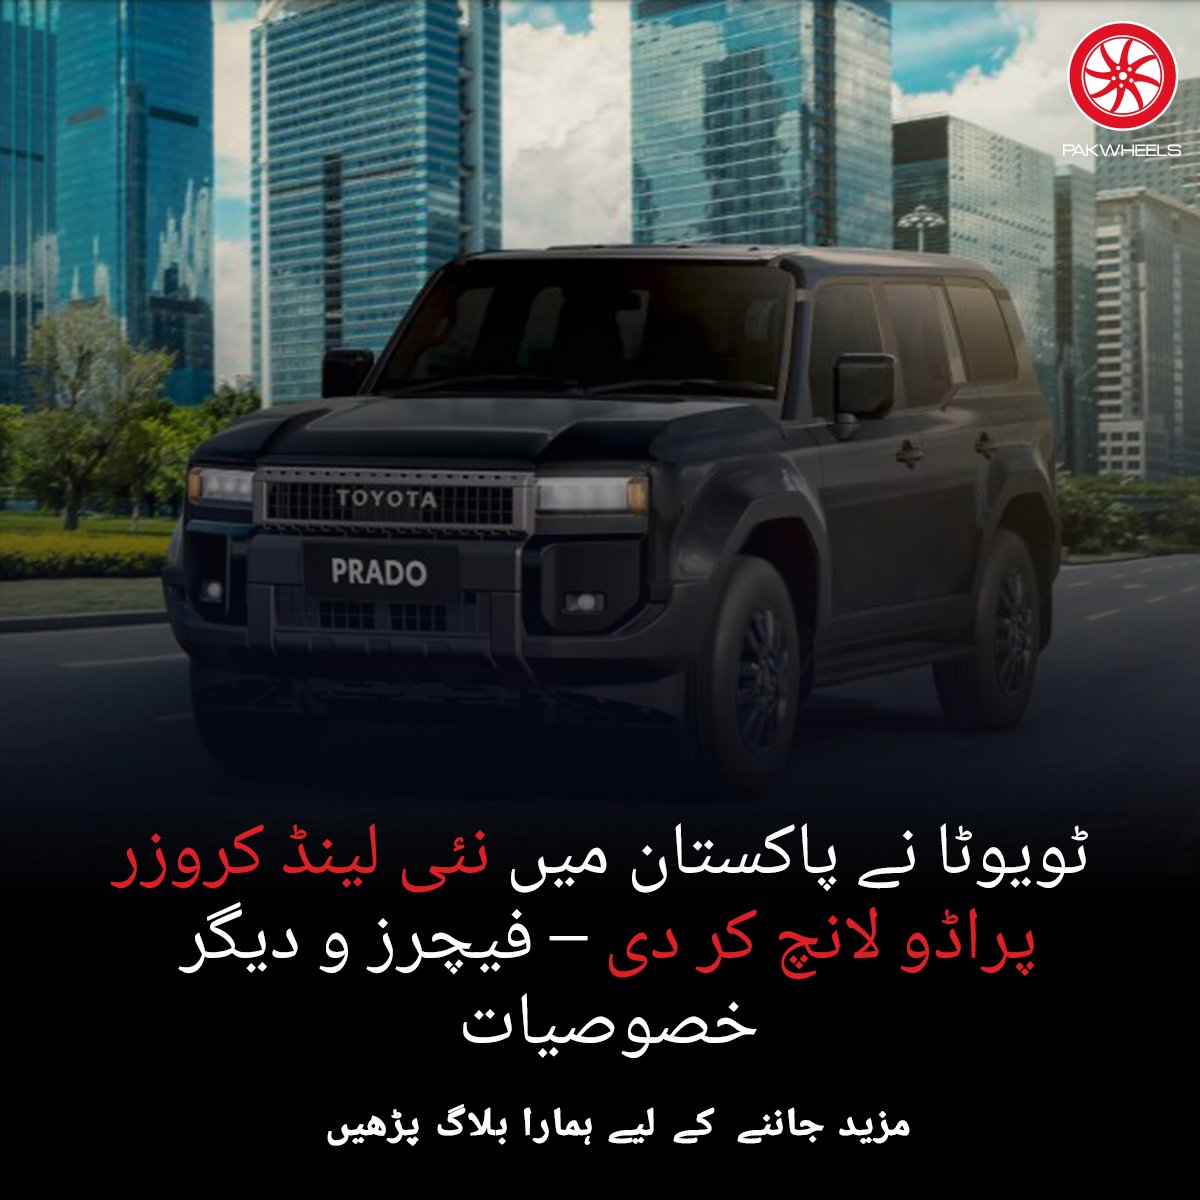 ٹویوٹا انڈس موٹر نے پاکستان میں نئی ​​لینڈ کروزر پراڈو لانچ کرنے کا اعلان کیا ہے۔

مزید پڑھیں: ow.ly/E7fF50RAgHo

#PakWheels #PWBlog #Toyota #ToyotaLandCruiser #Prado #Specs